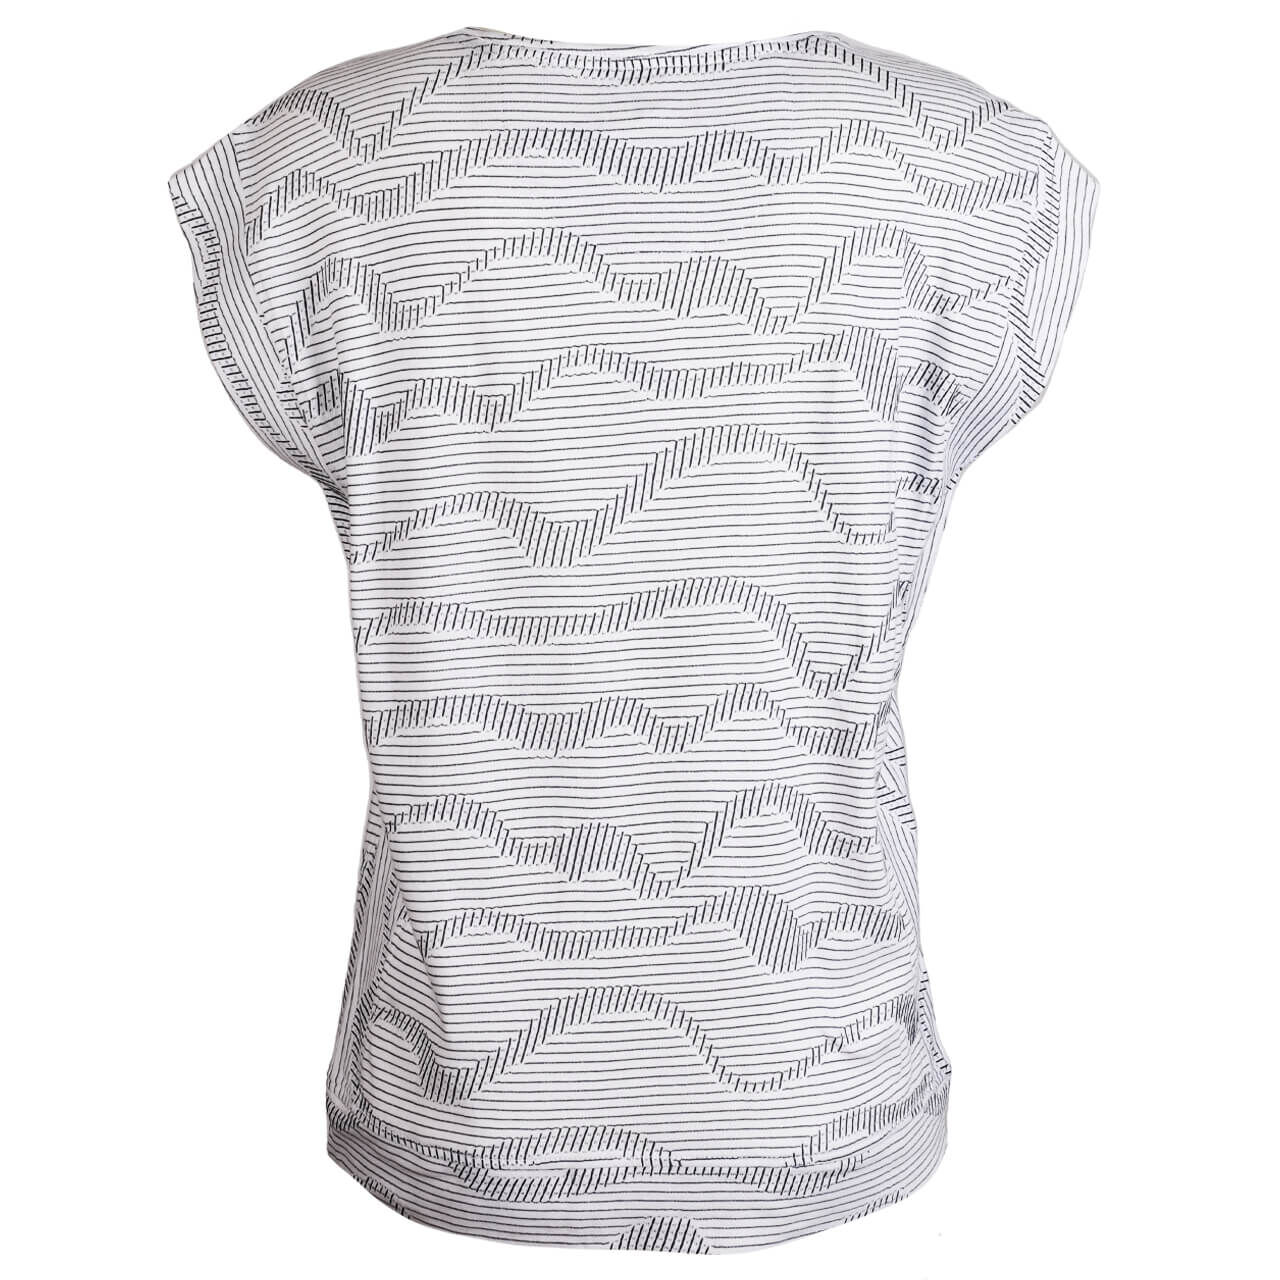 Soquesto Damen T-Shirt white waves stripes